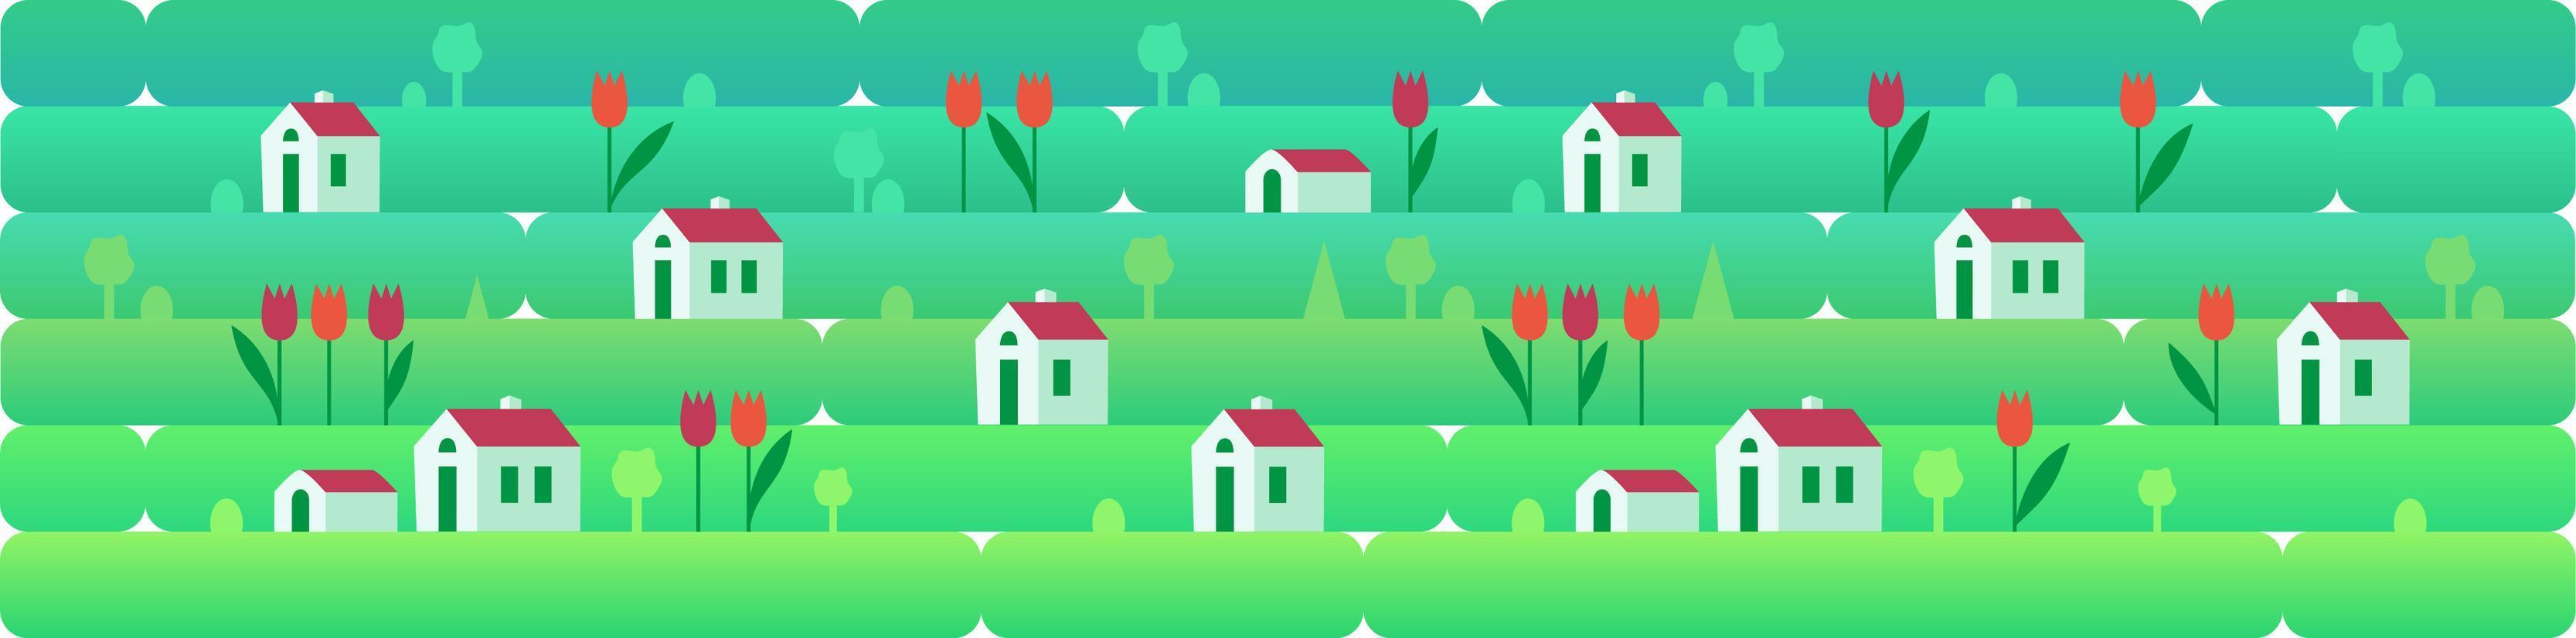 banner un paisaje de primavera o sammer con pequeñas casas y tulipanes rojos, sobre un fondo de hierba, naturaleza, colinas. ilustración vectorial en estilo plano para diseño, juegos o sitios web vector